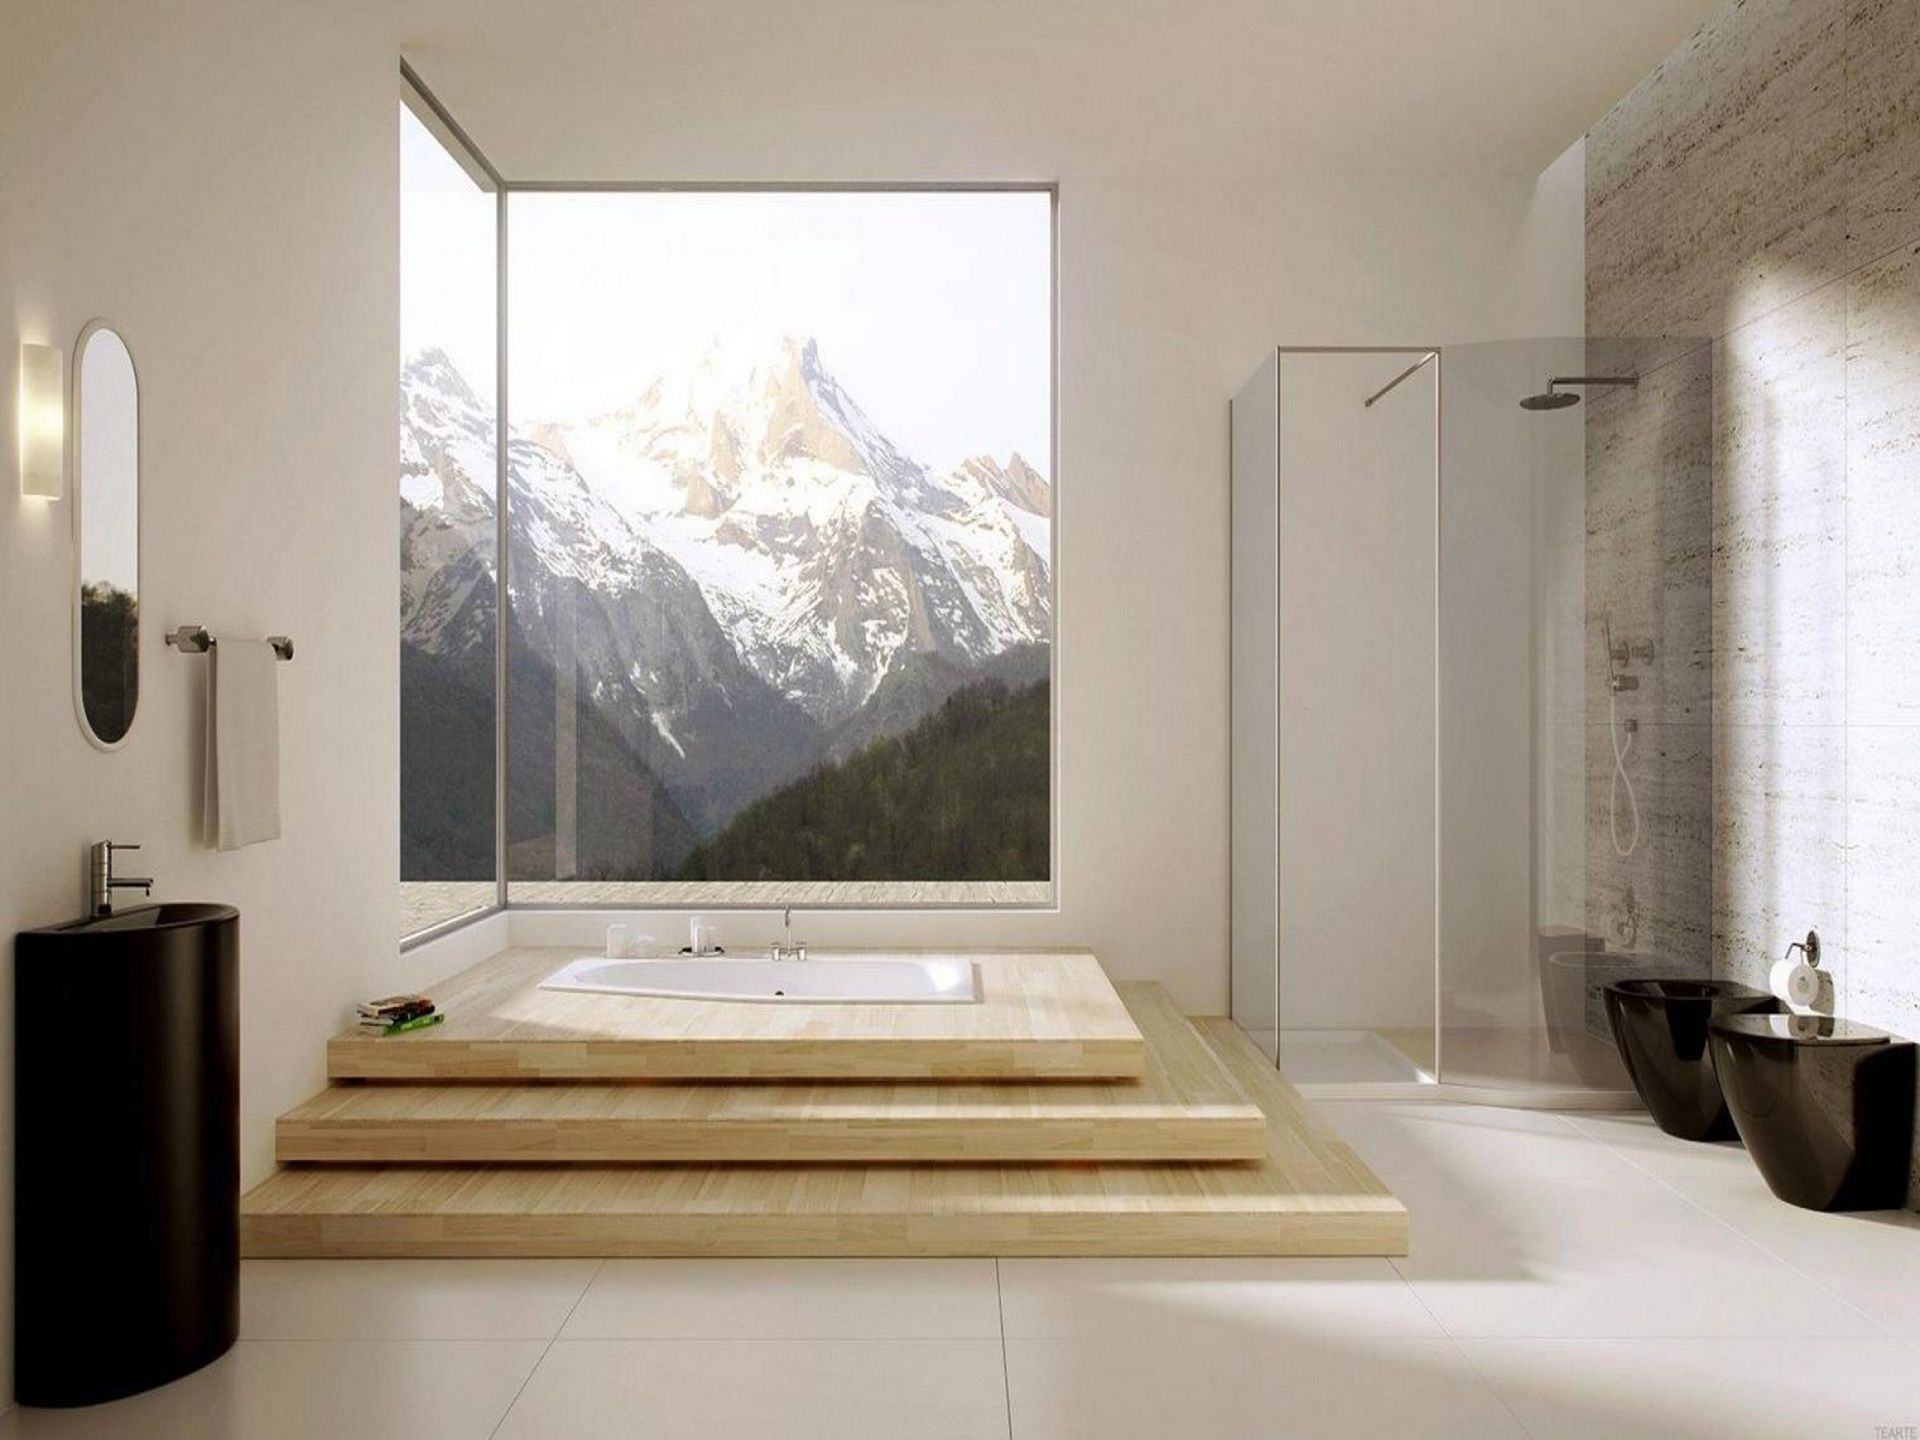 Phòng tắm rộng rãi với thiết kế '2 trong 1': Bồn tắm chìm trên những bậc tam cấp bằng gỗ nhìn ra khung cảnh núi non trùng điệp; buồng tắm đứng cửa kính ở góc phòng được thiết kế tối giản để chủ nhân có nhiều lựa chọn hơn.